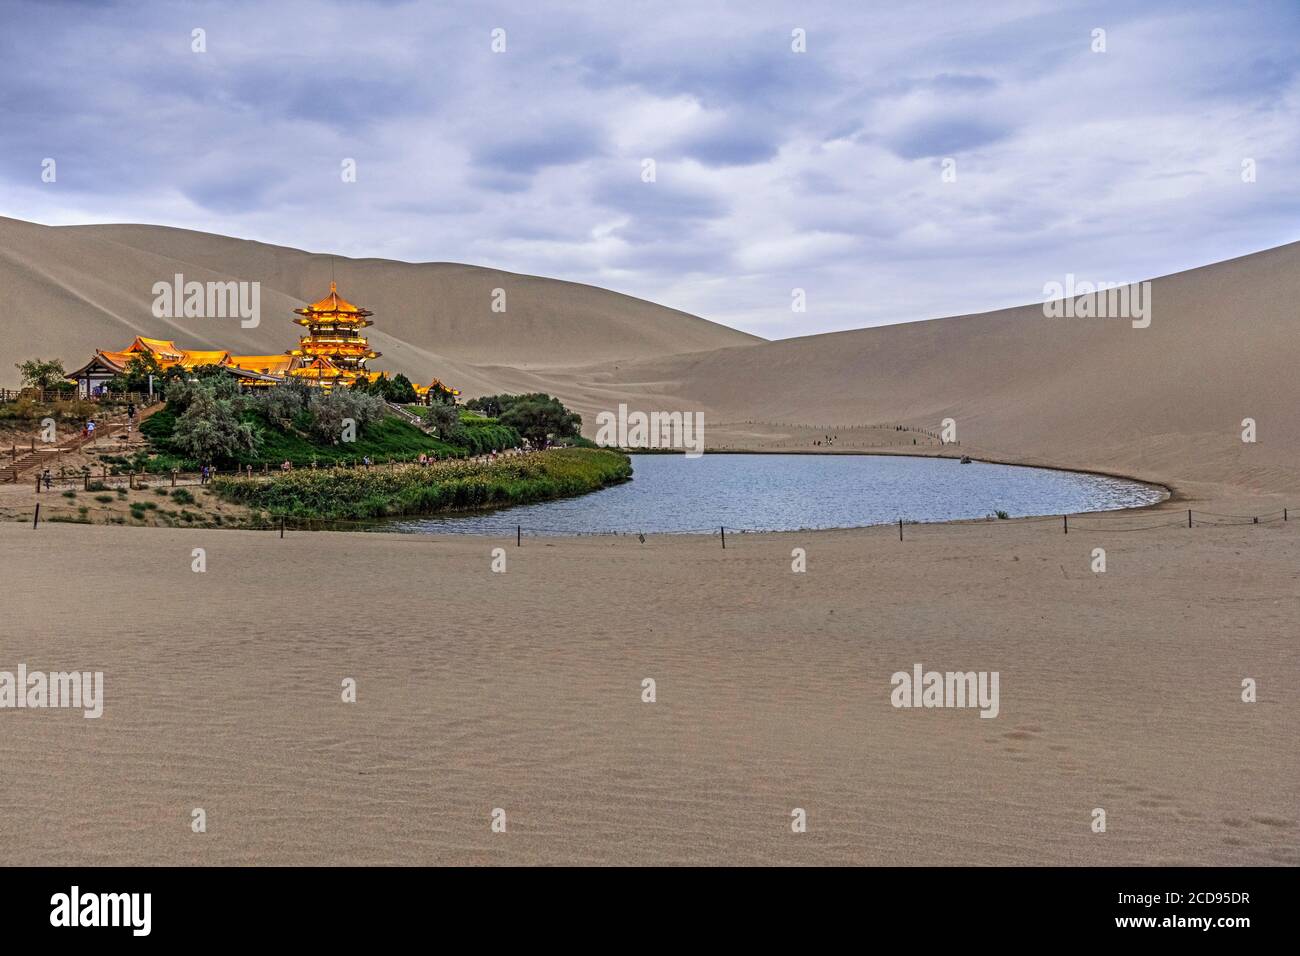 Dunes de sable chantant, pavillon illuminé et lac Yueyaquan / Lac Yueya / Lac Crescent Moon, oasis près de Dunhuang dans la province de Gansu, Chine Banque D'Images